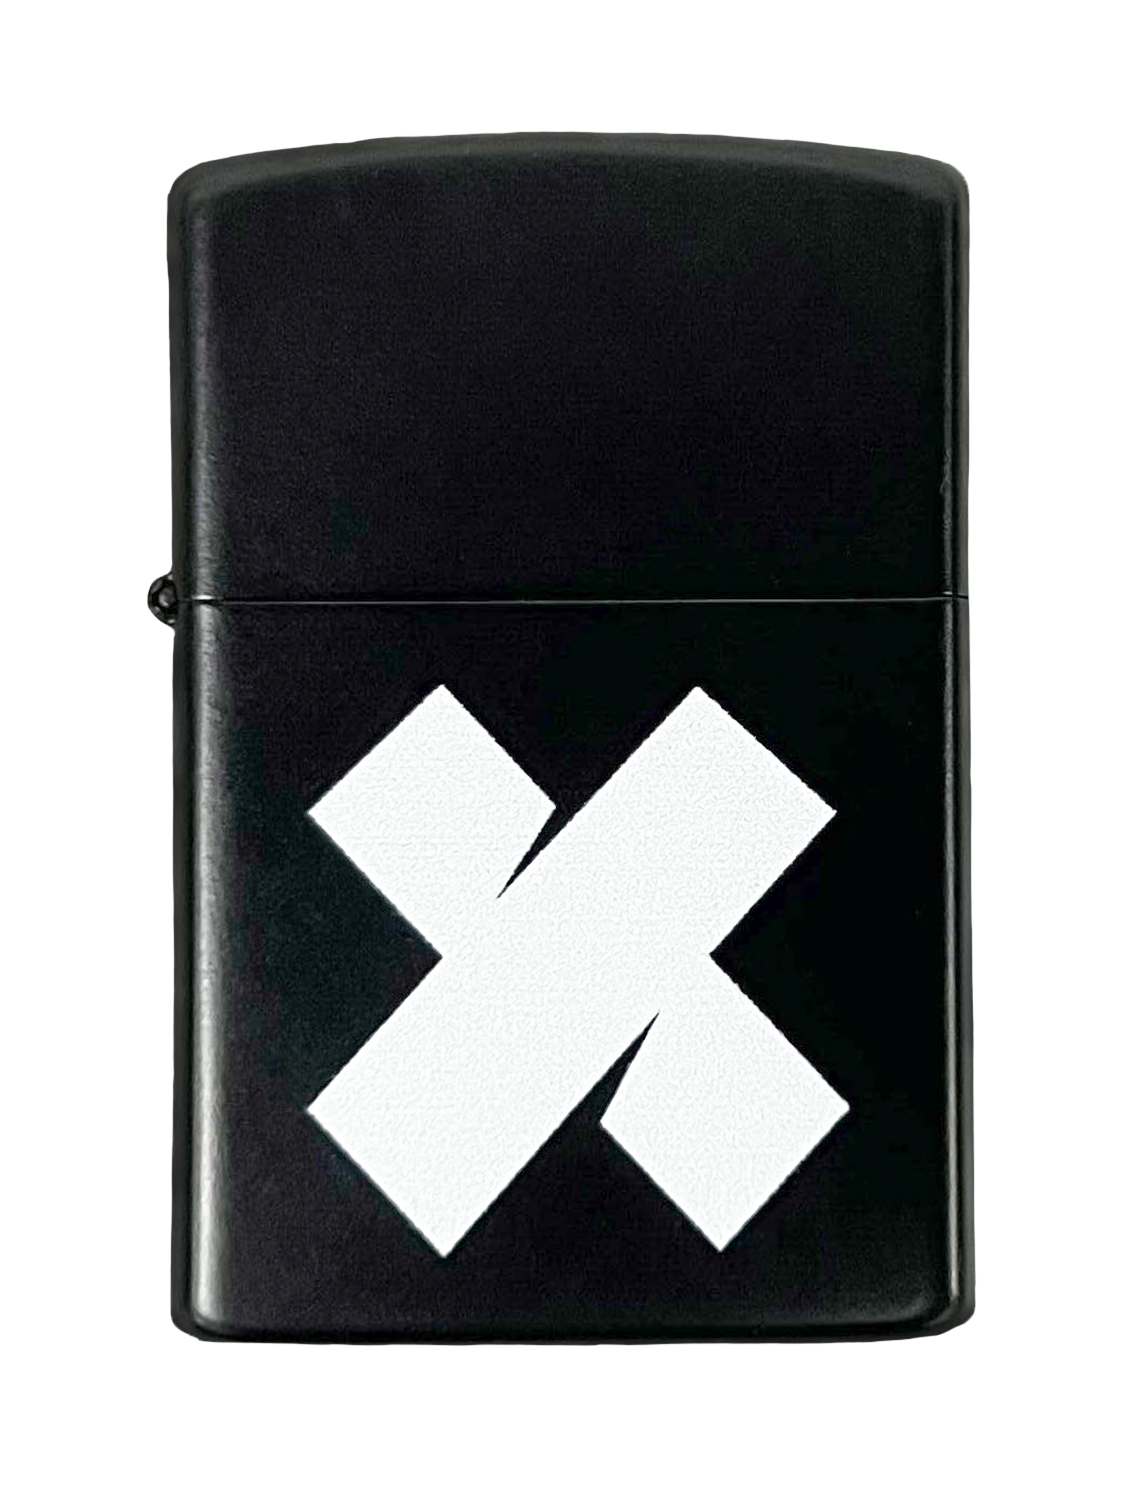 XPLR Logo Lighter